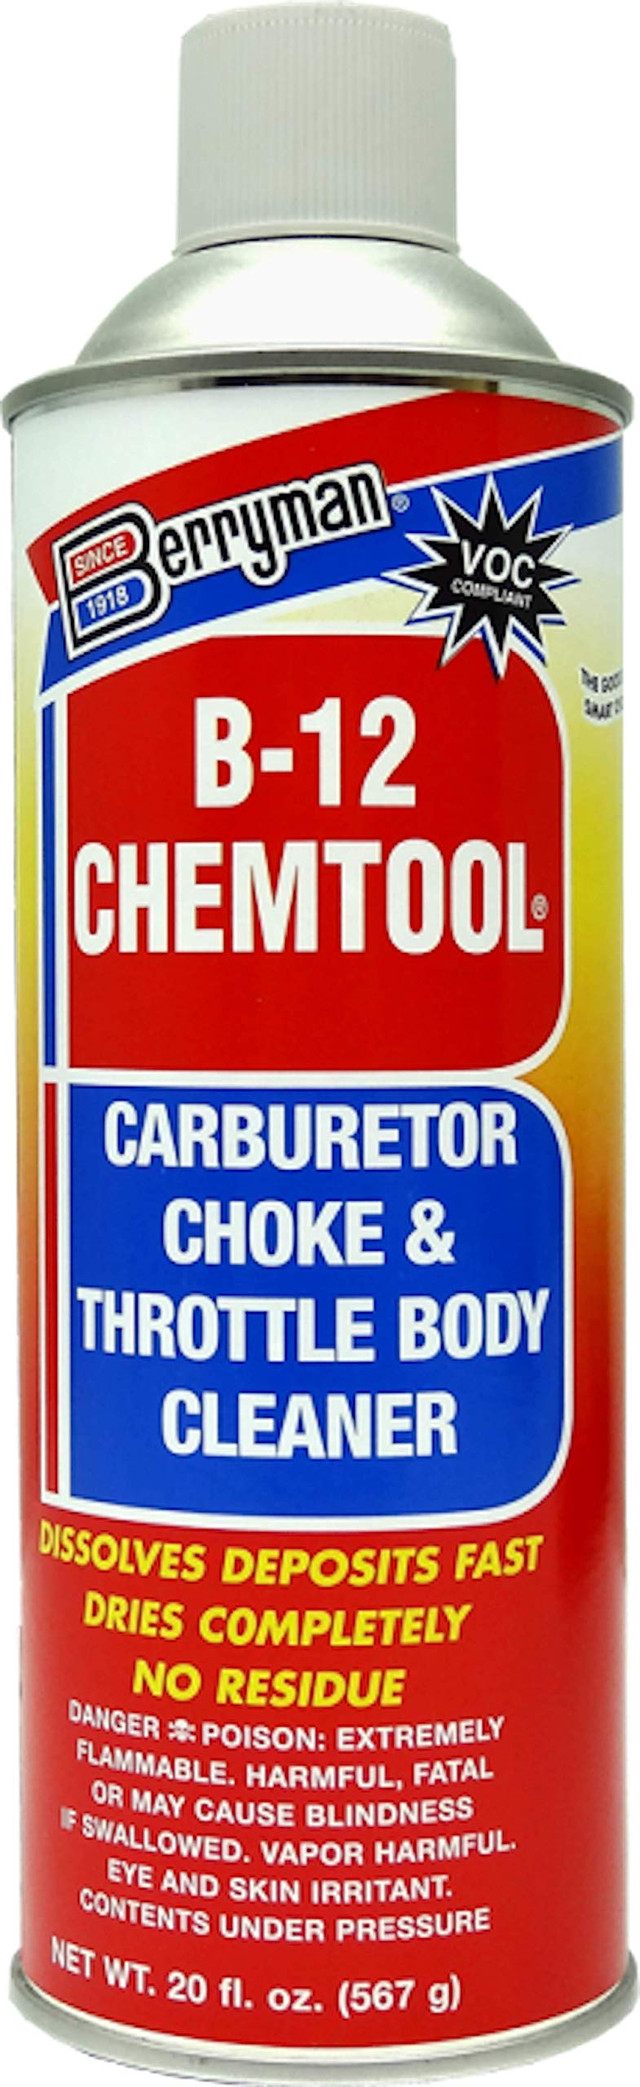 BERRYMAN b-12 chemtool förgasarrengörare - ca (0120c)